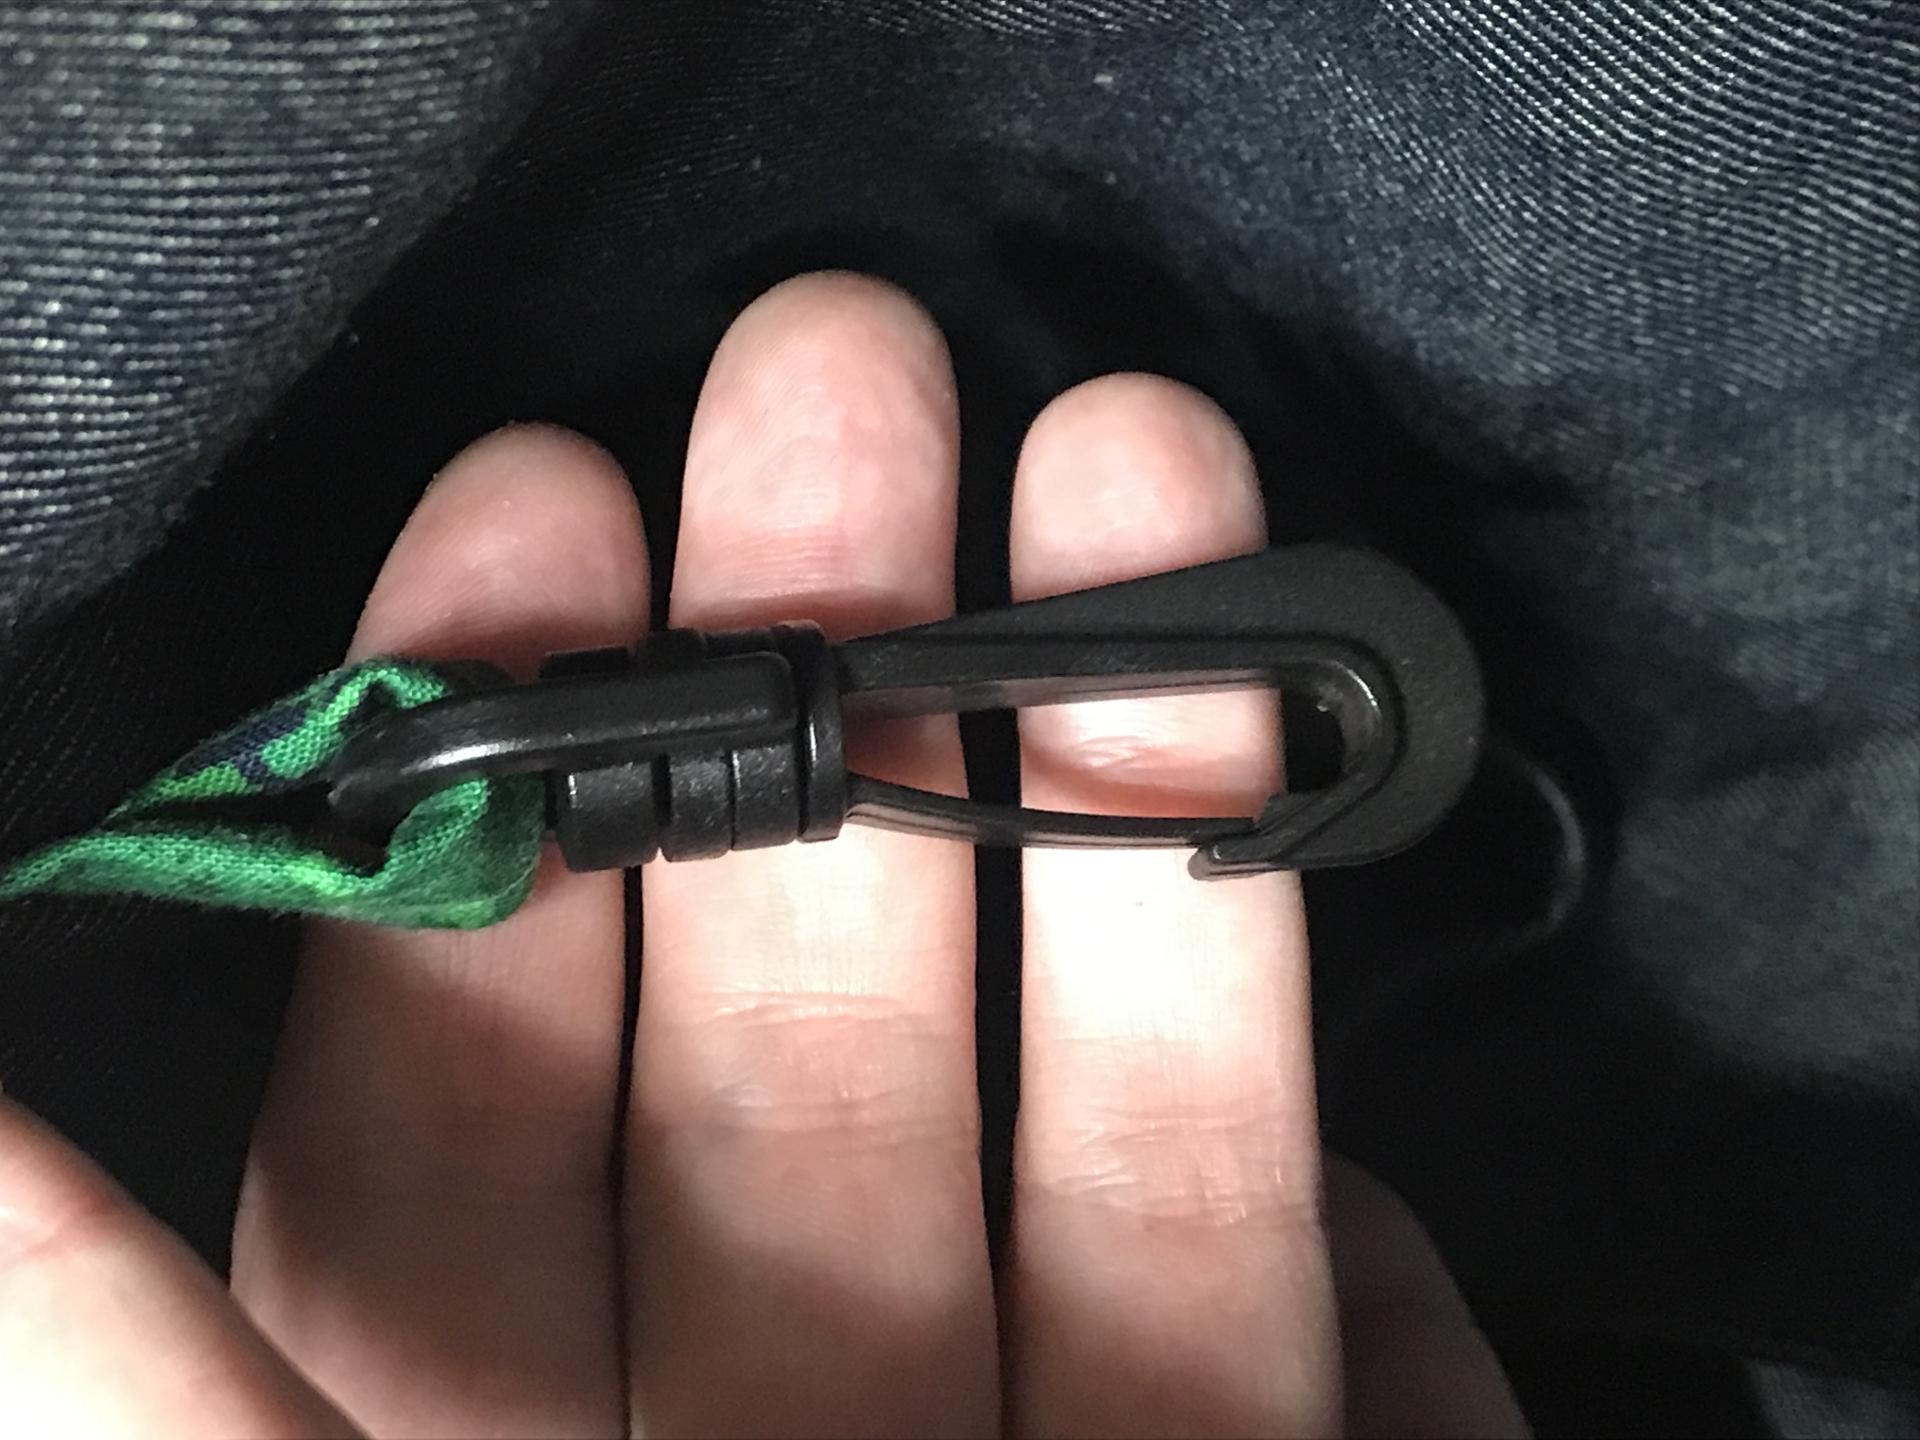 Swivel hook clip for keys, etc.